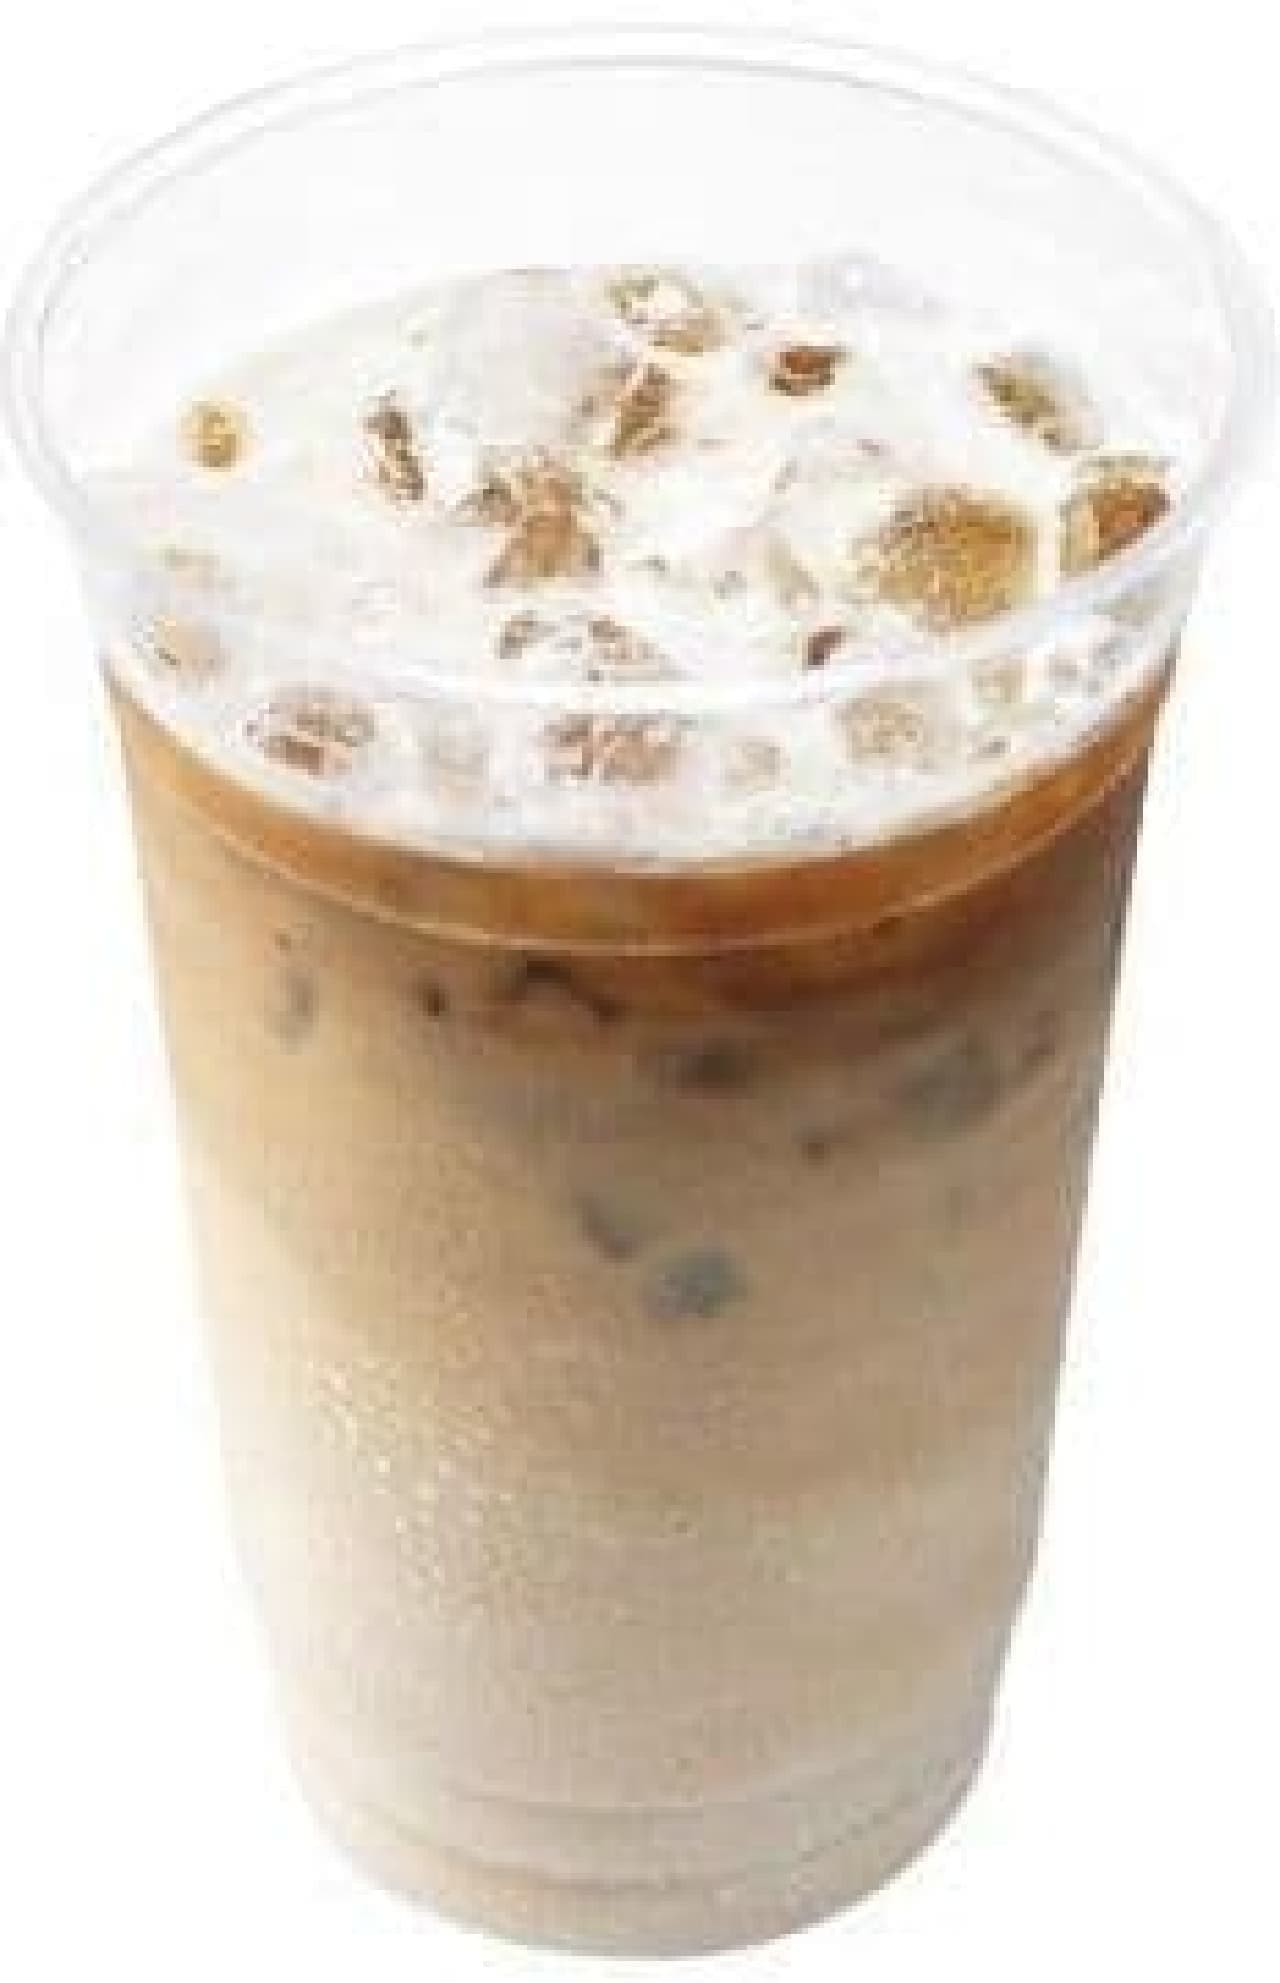 Lotteria "Mega Iced Cafe Latte